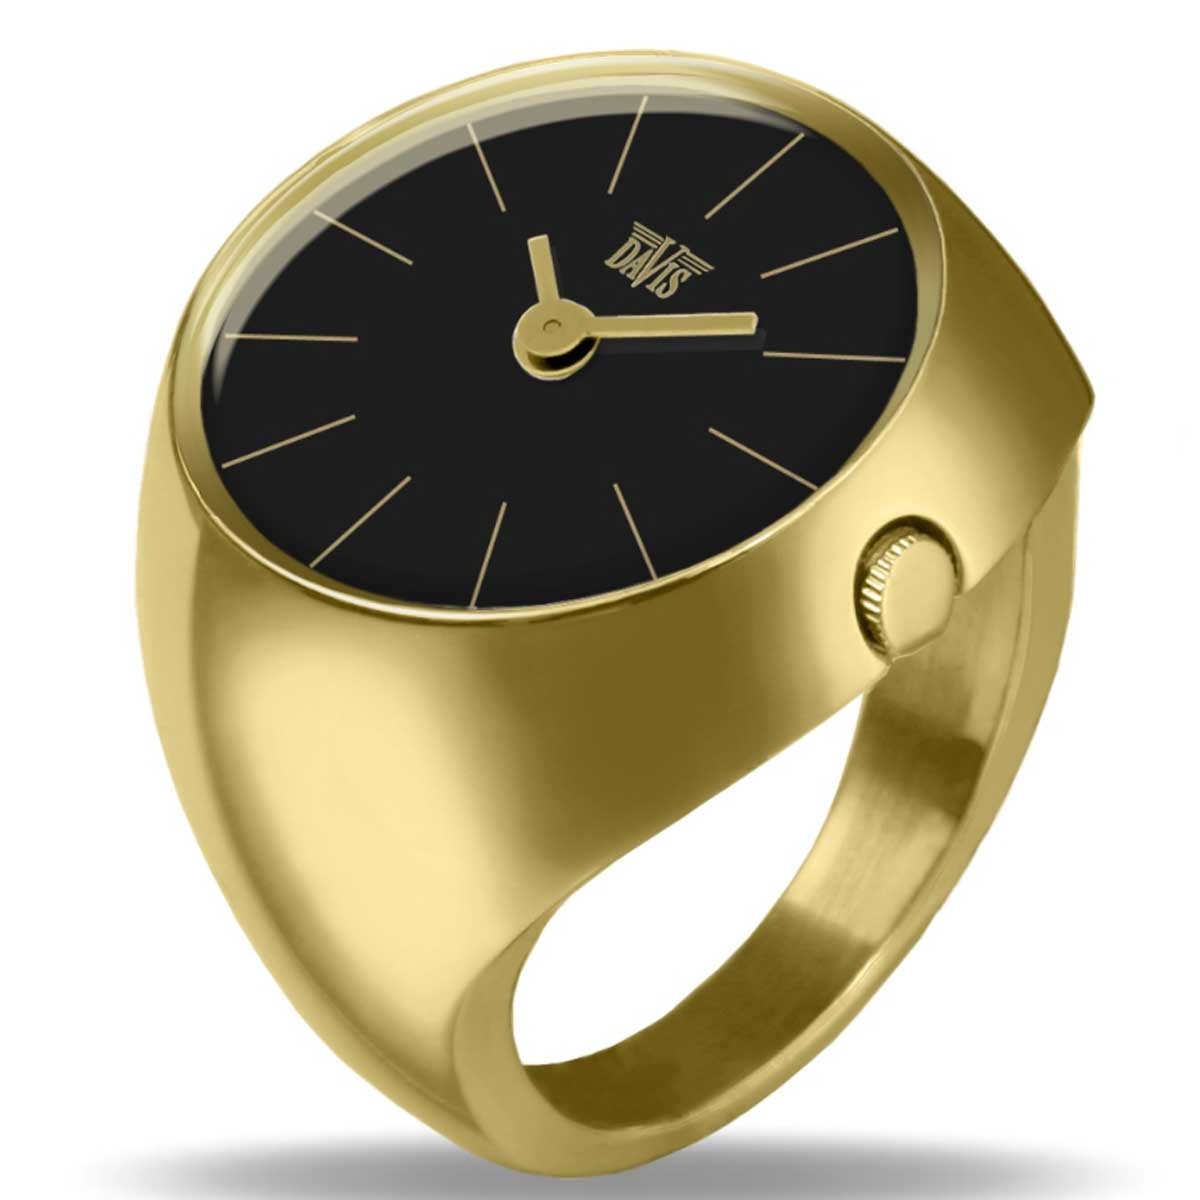 フランス製指輪時計 【時間指定不可】 指時計 DAVIS デイビス -2005- セール特価 イエローゴールド×ブラック リングウォッチ